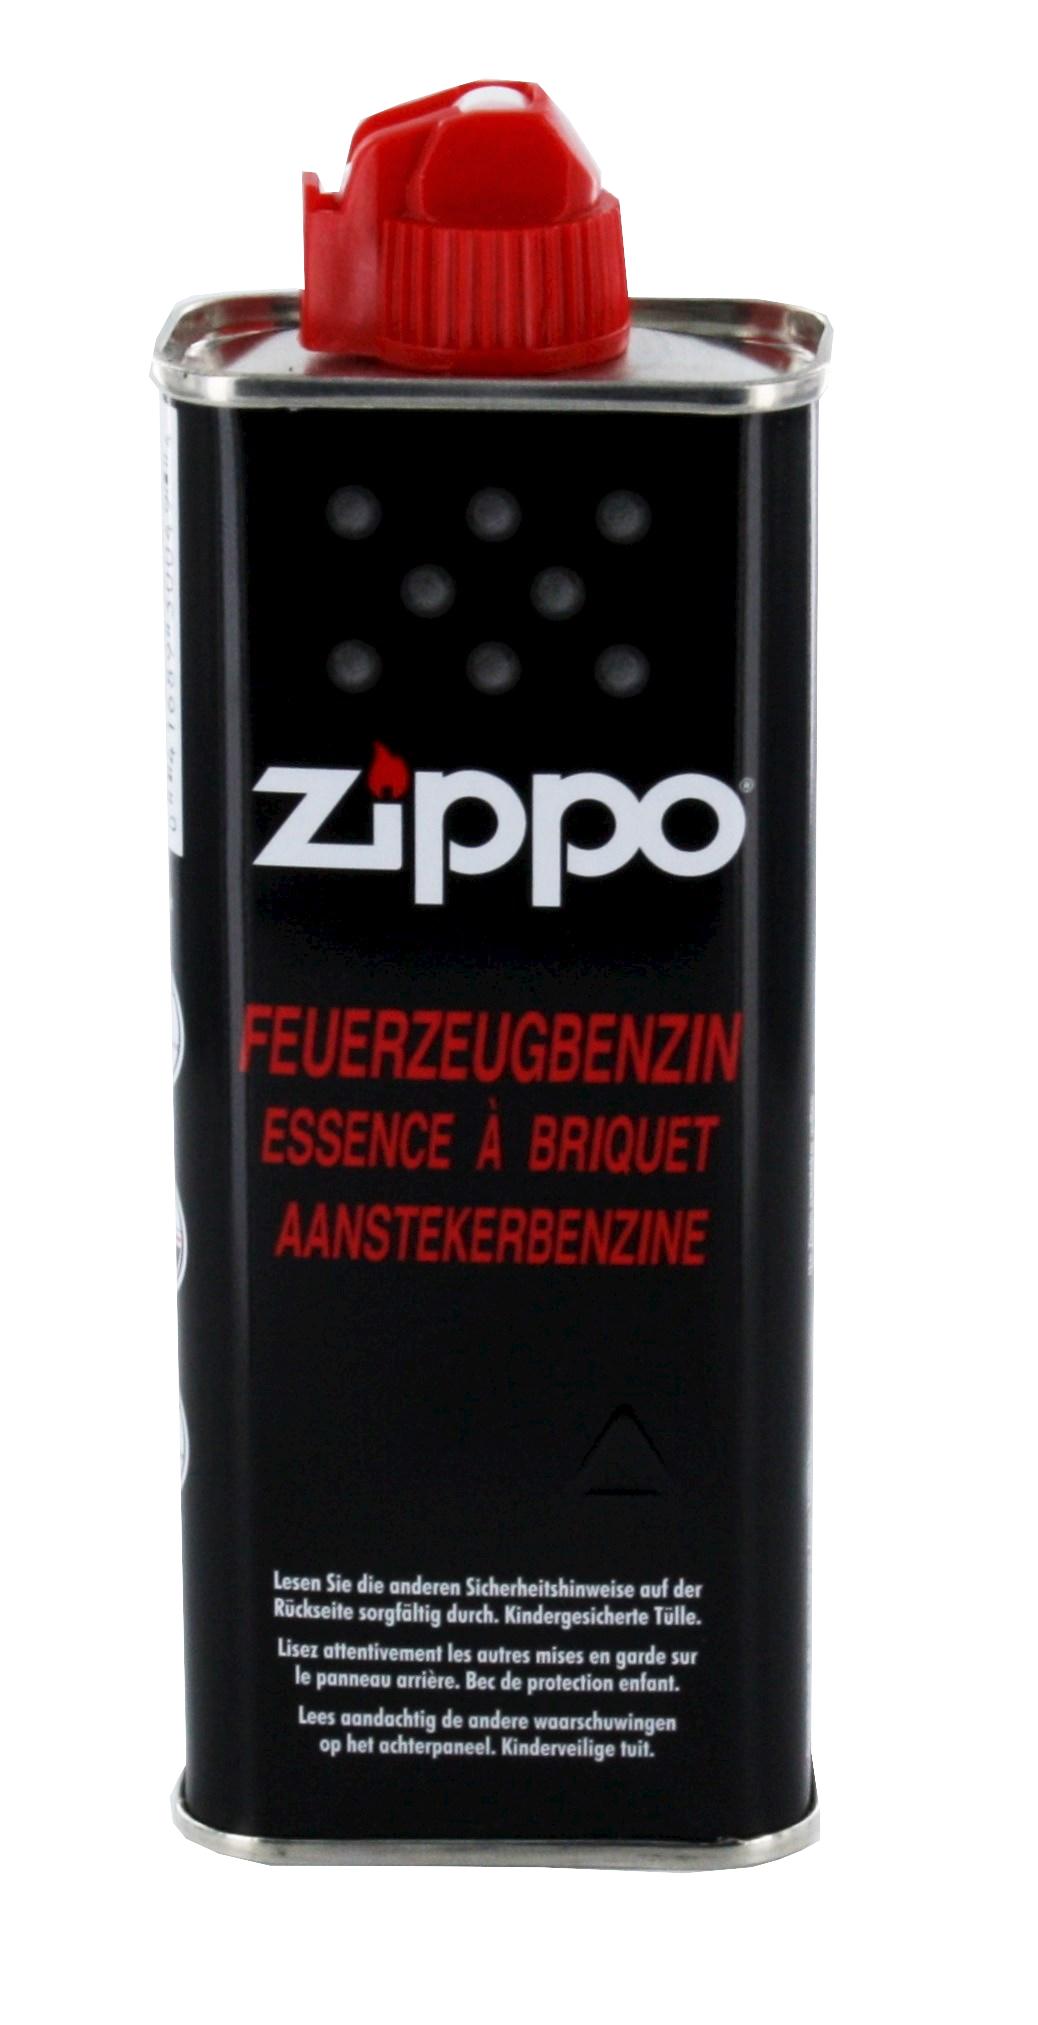 Zippo Feuerzeugbenzin 1 Packung